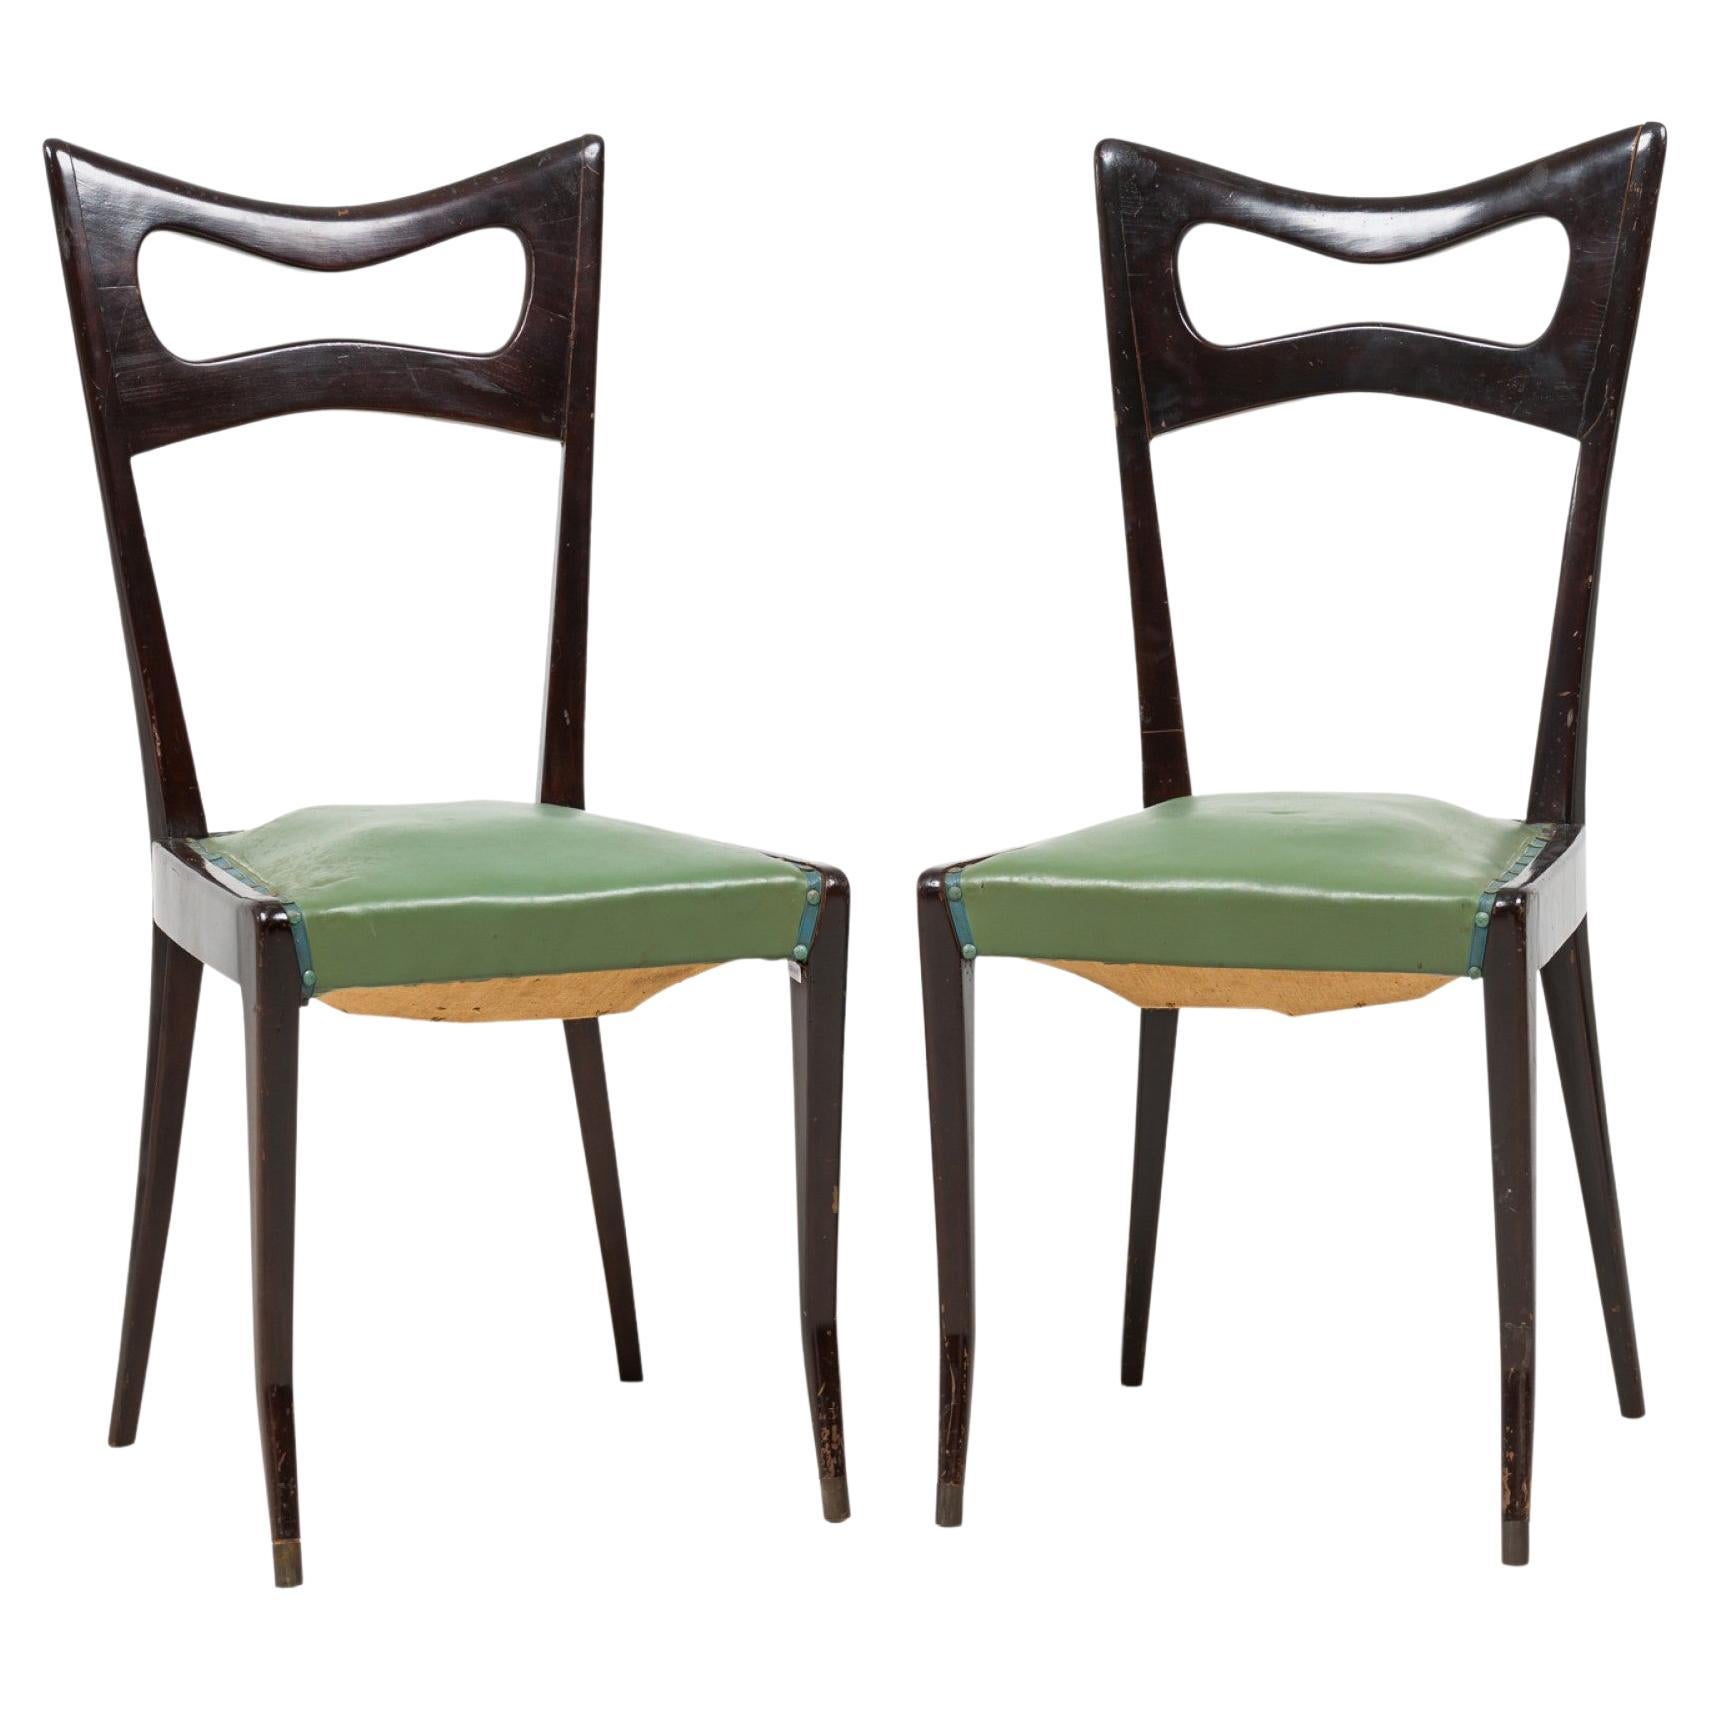 Ensemble de 8 chaises de salle à manger italiennes Ico Parisi tapissées de cuir vert ébénisé